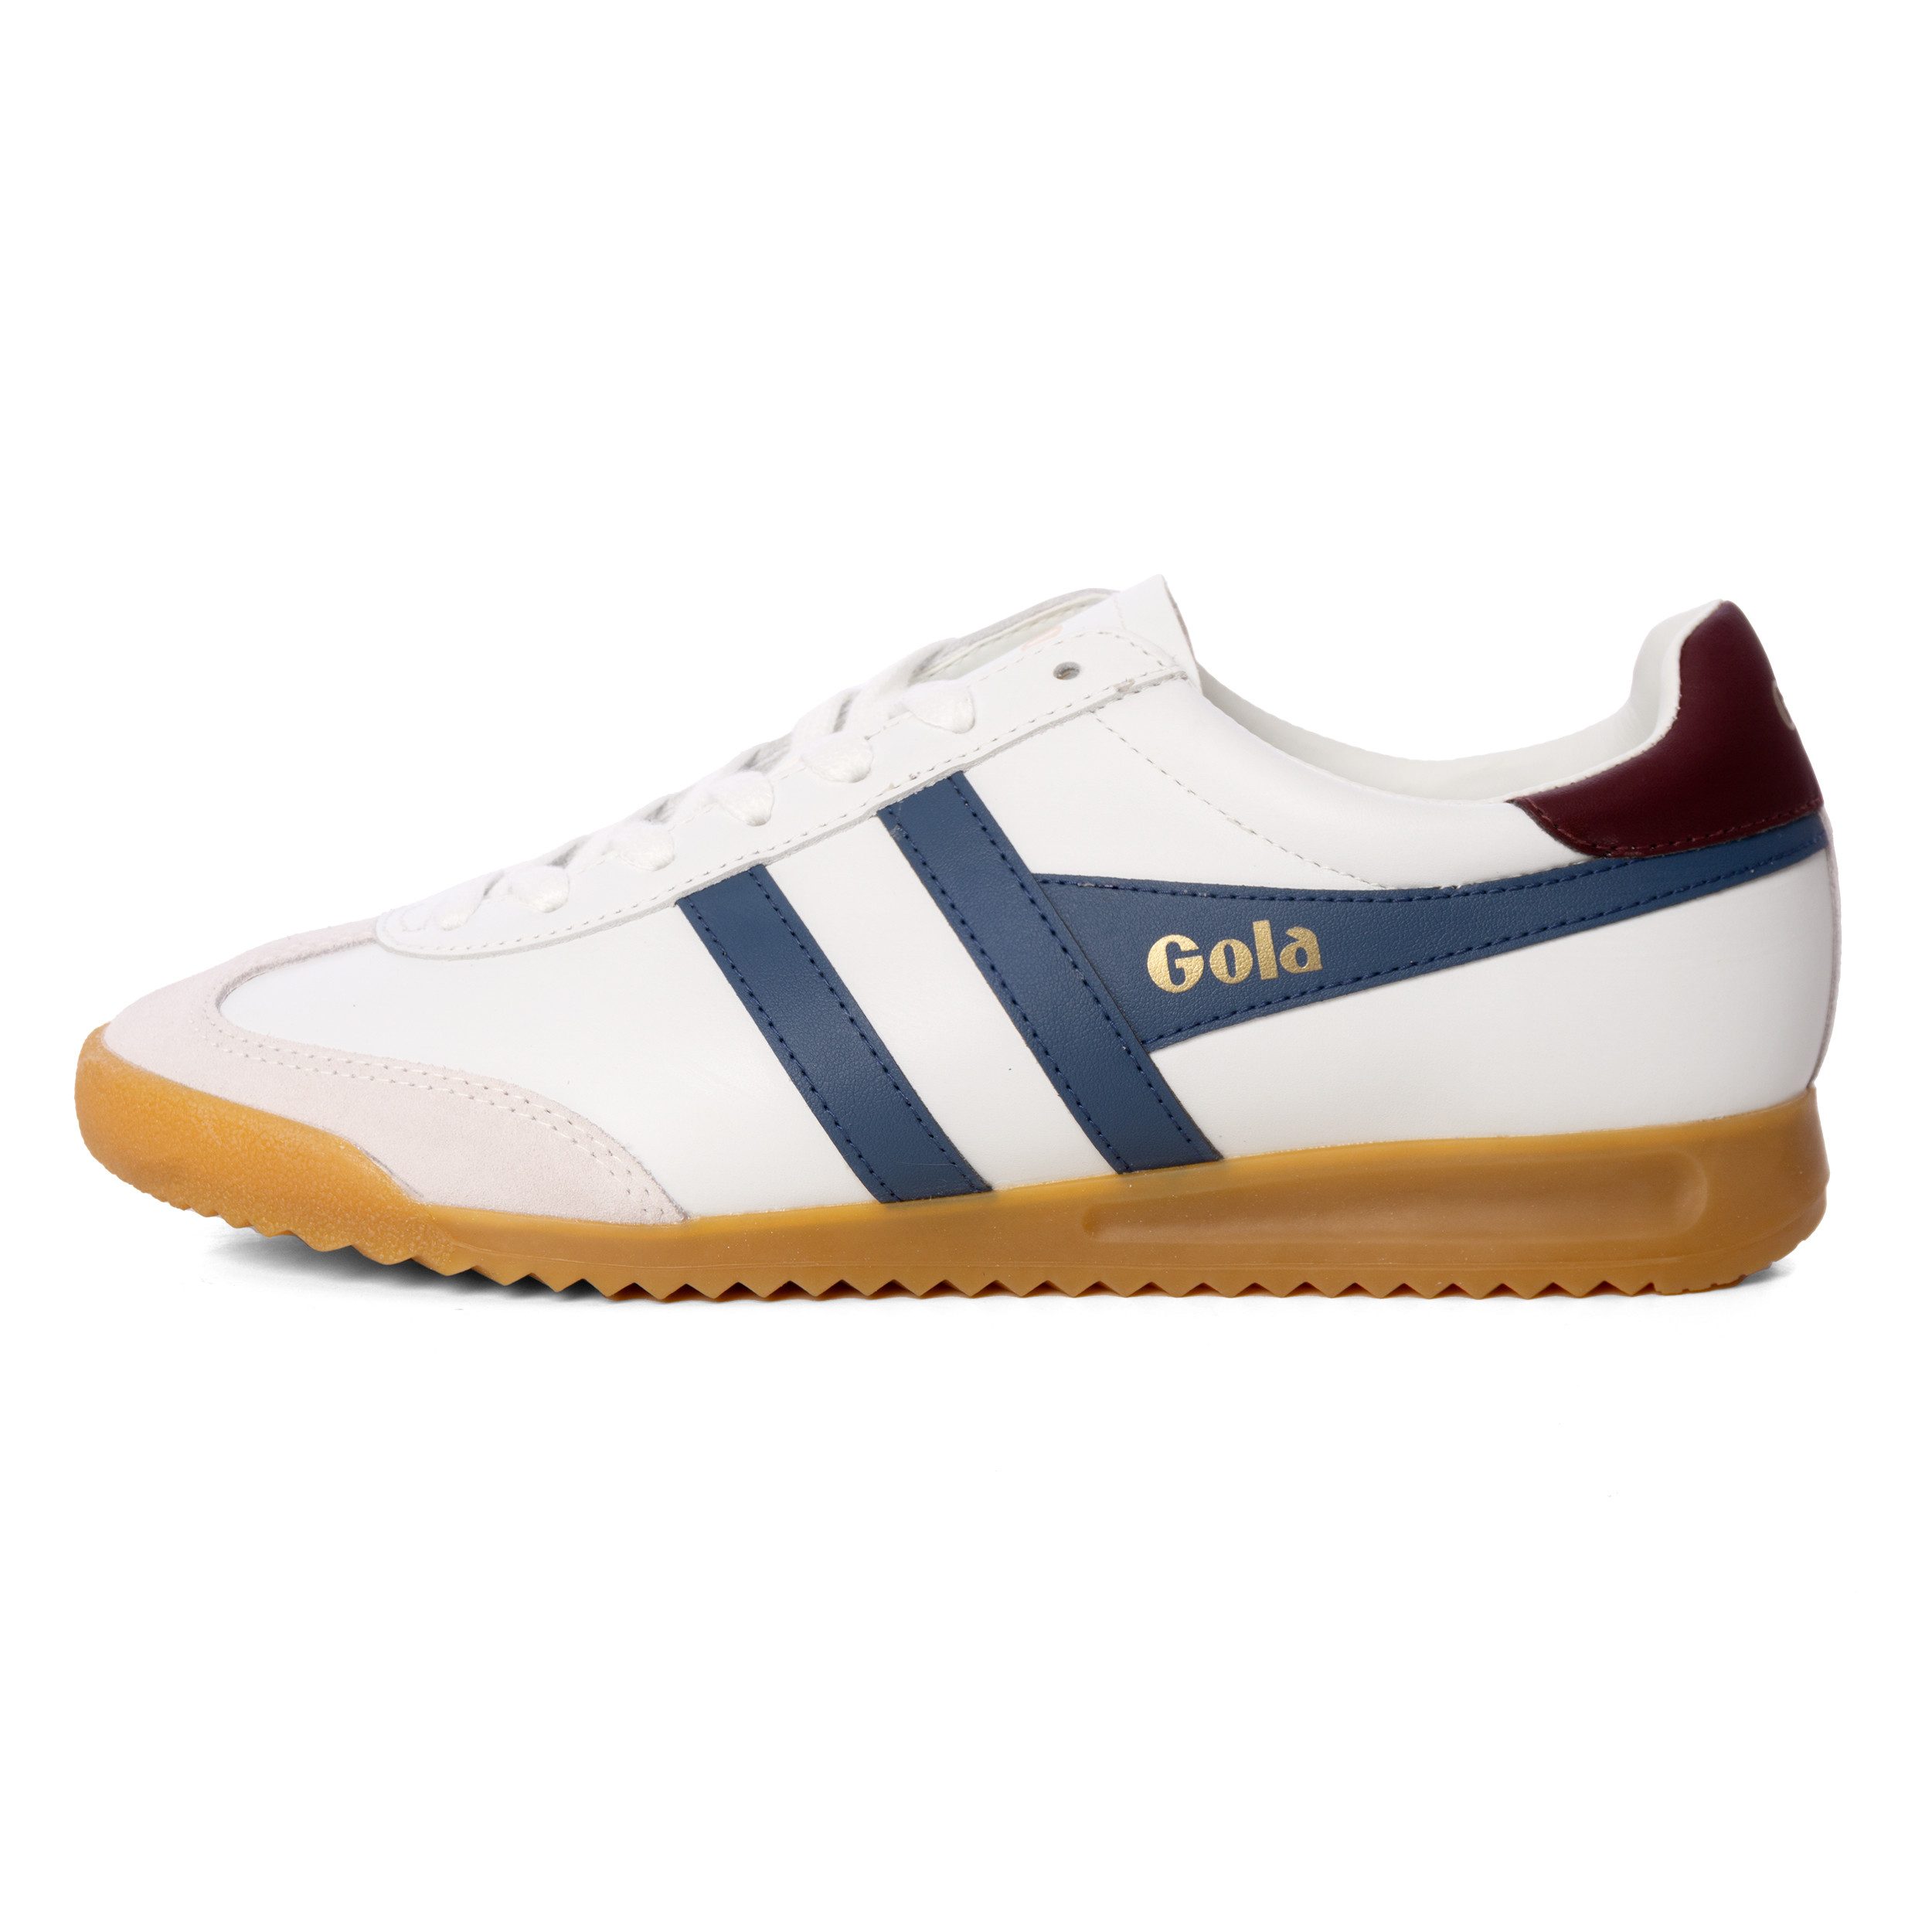 Gola Schuhe Gola Torpedo Leather, G 42, F white/moonlight Sneaker